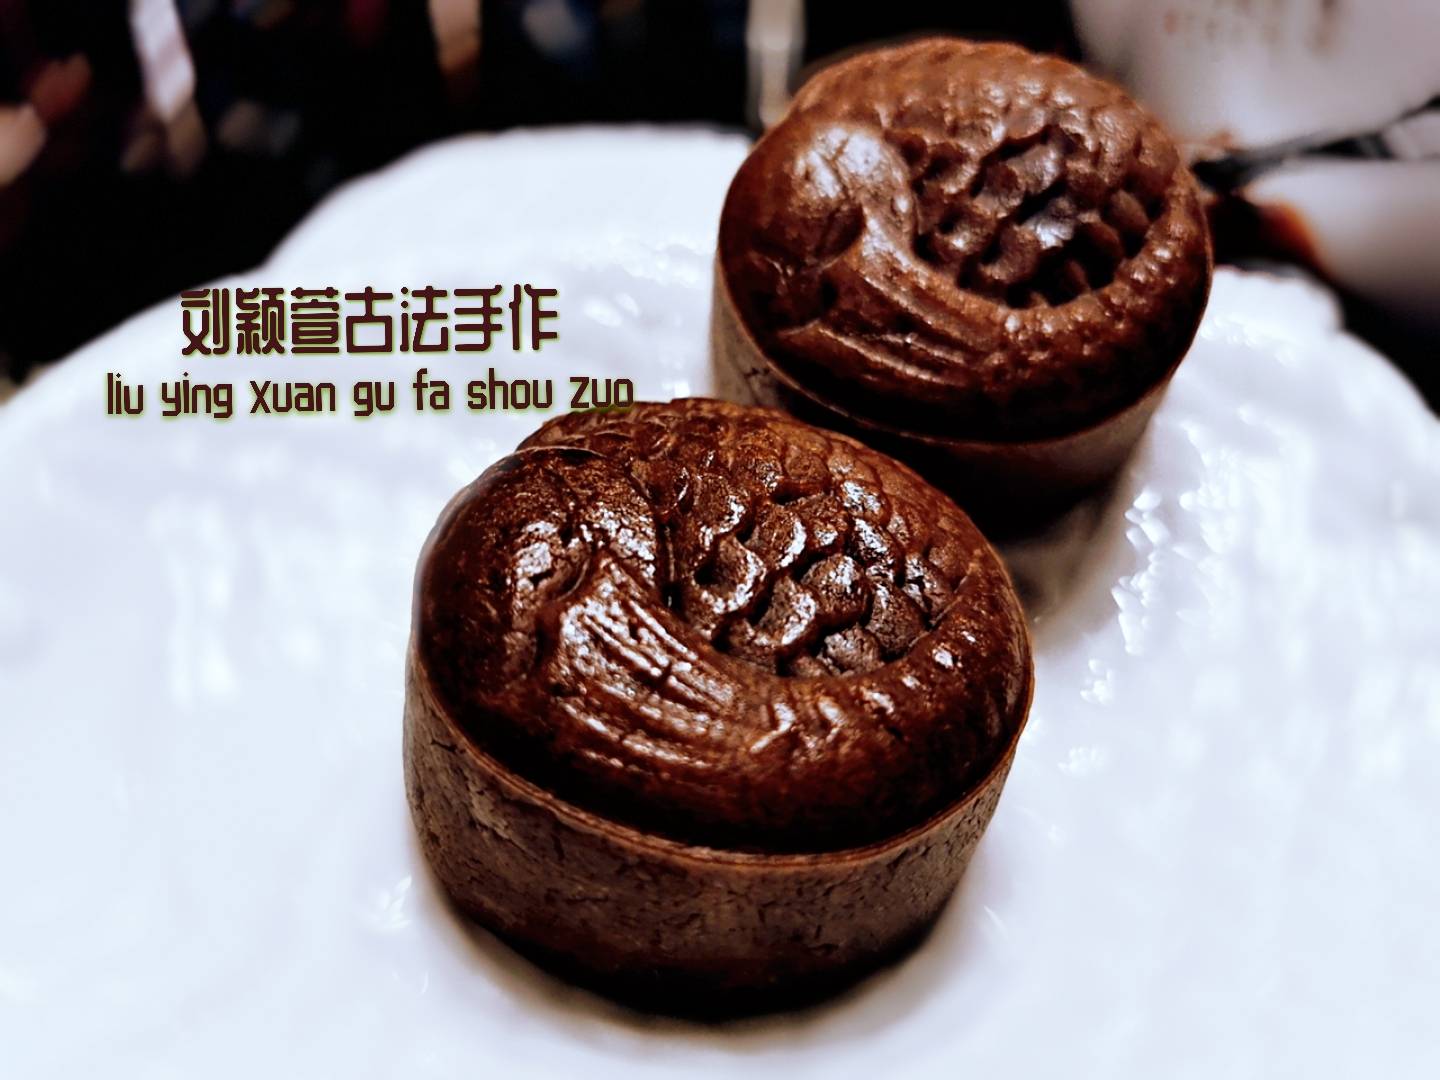 古城美食~刘颖萱古法手作黑糖咸蛋黄红豆沙广式月饼